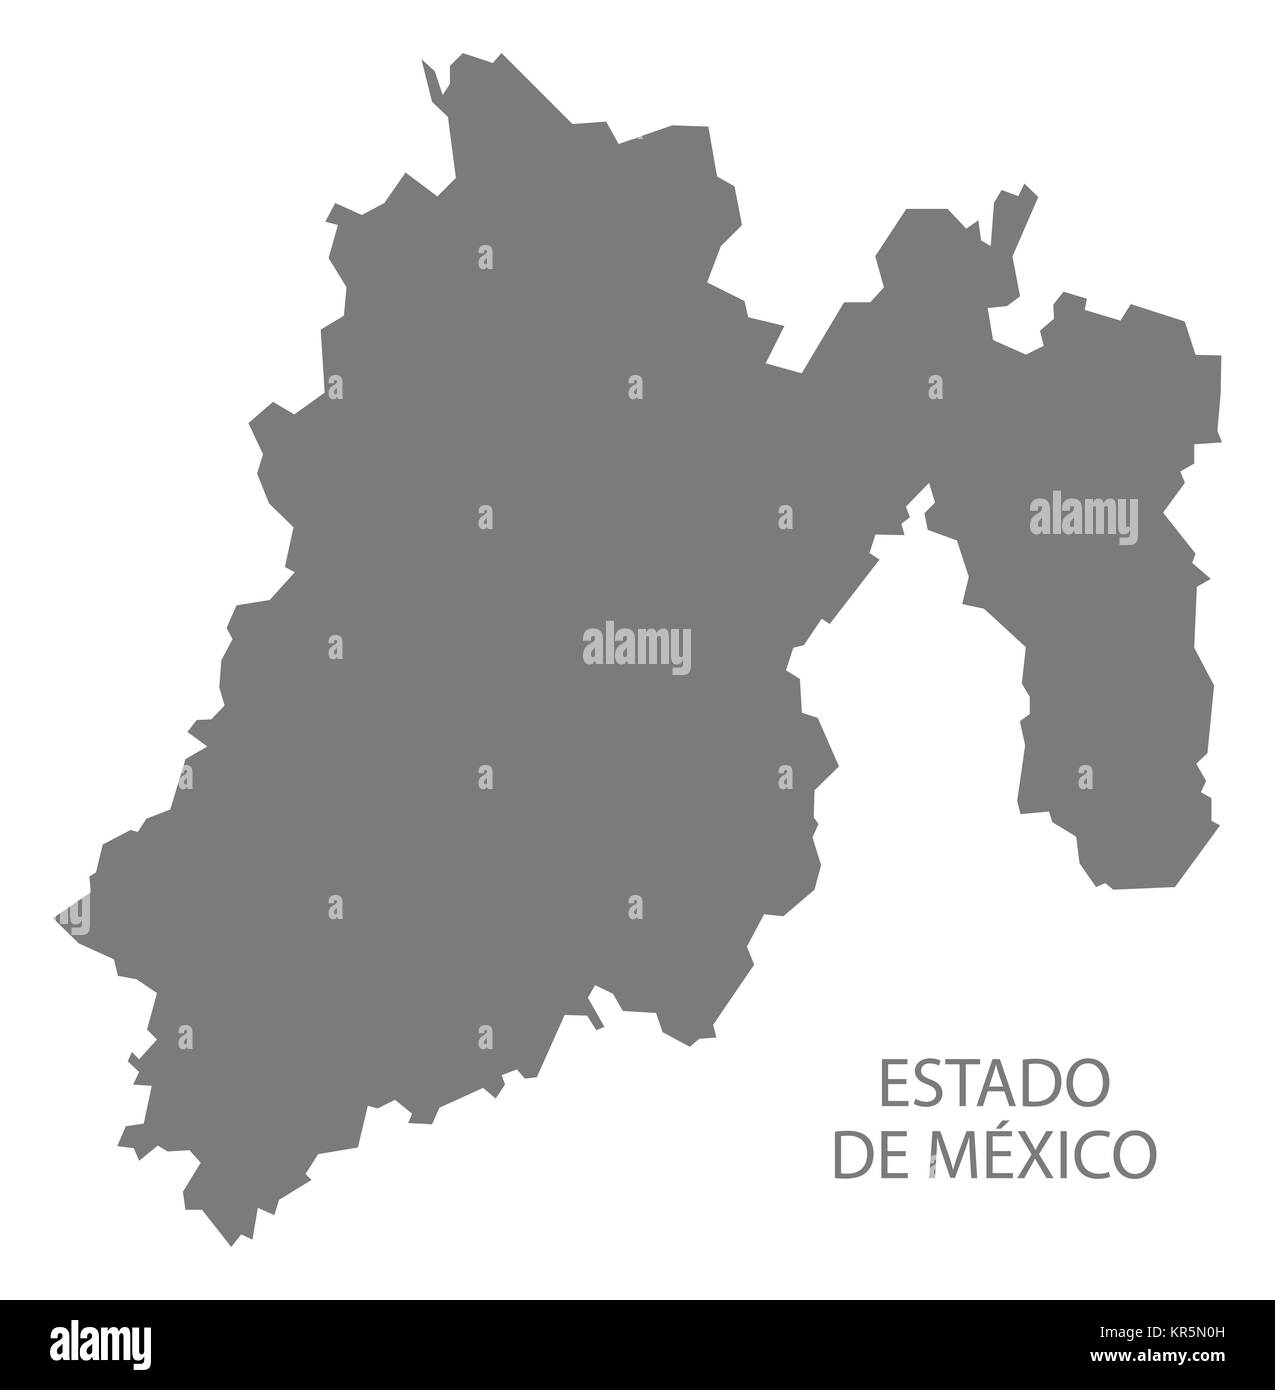 Estado De Mexico Mexico Map grey Stock Photo